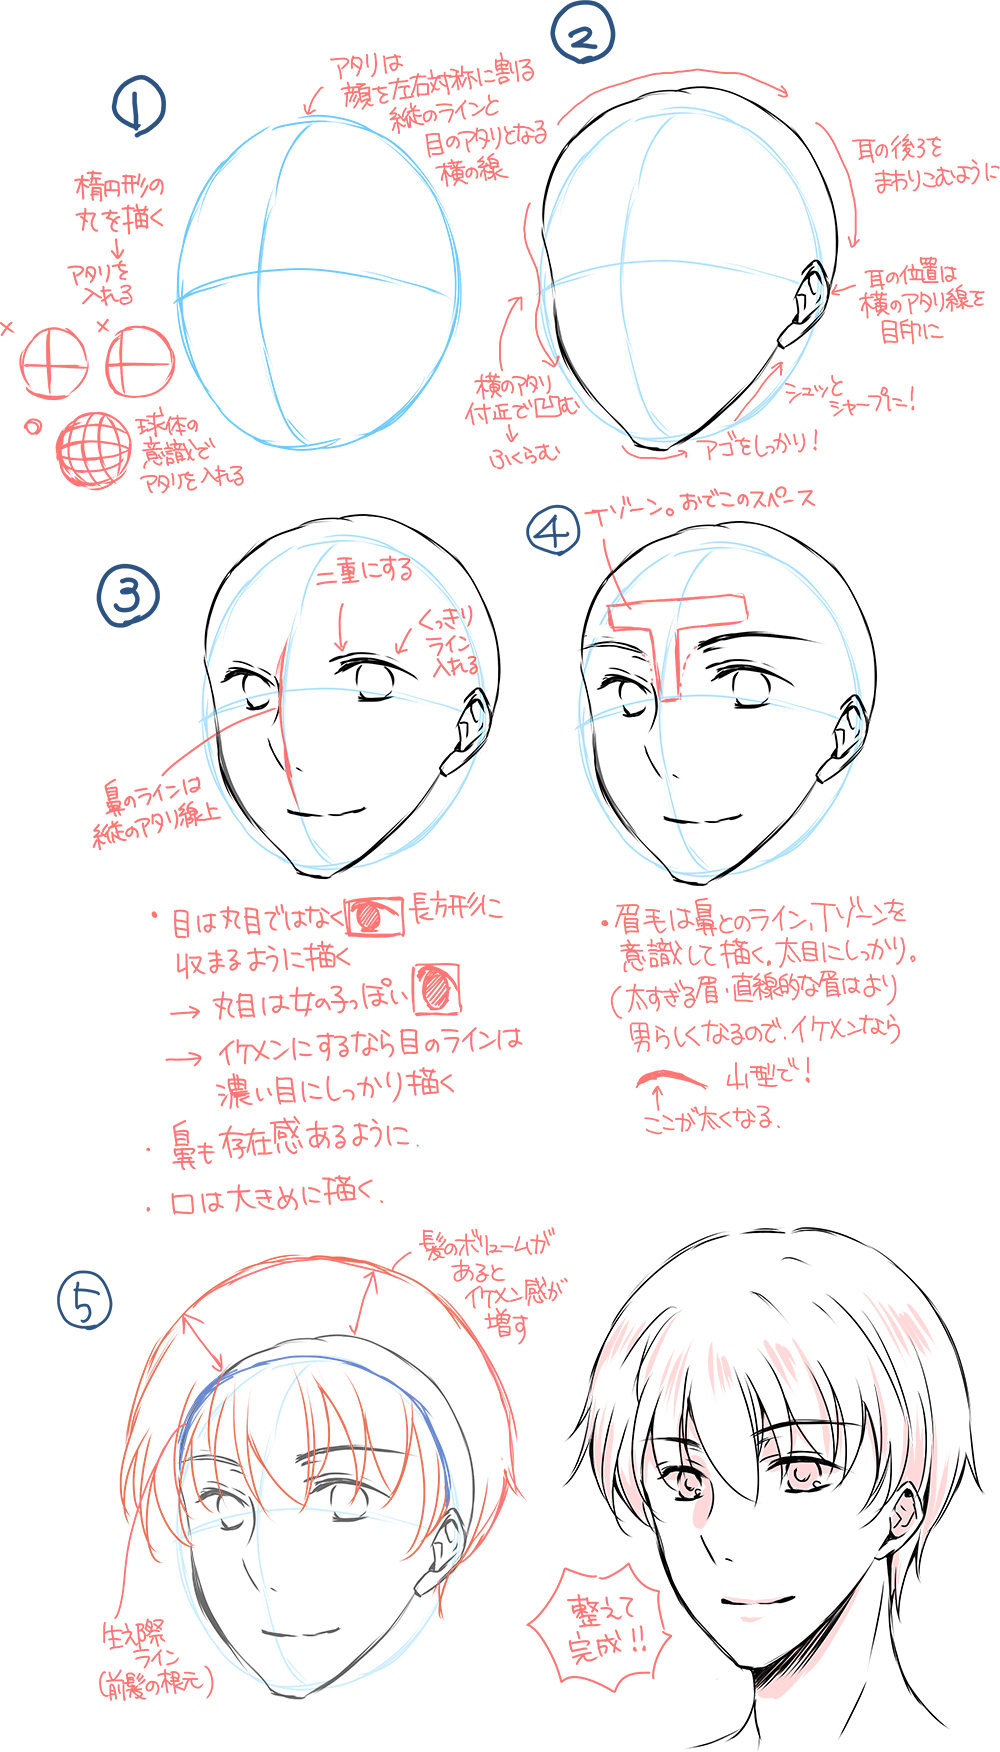 イケメン 理想のイケメンが描ける 顔 体格のポイント キャラクター イラスト マンガ描き方ナビ